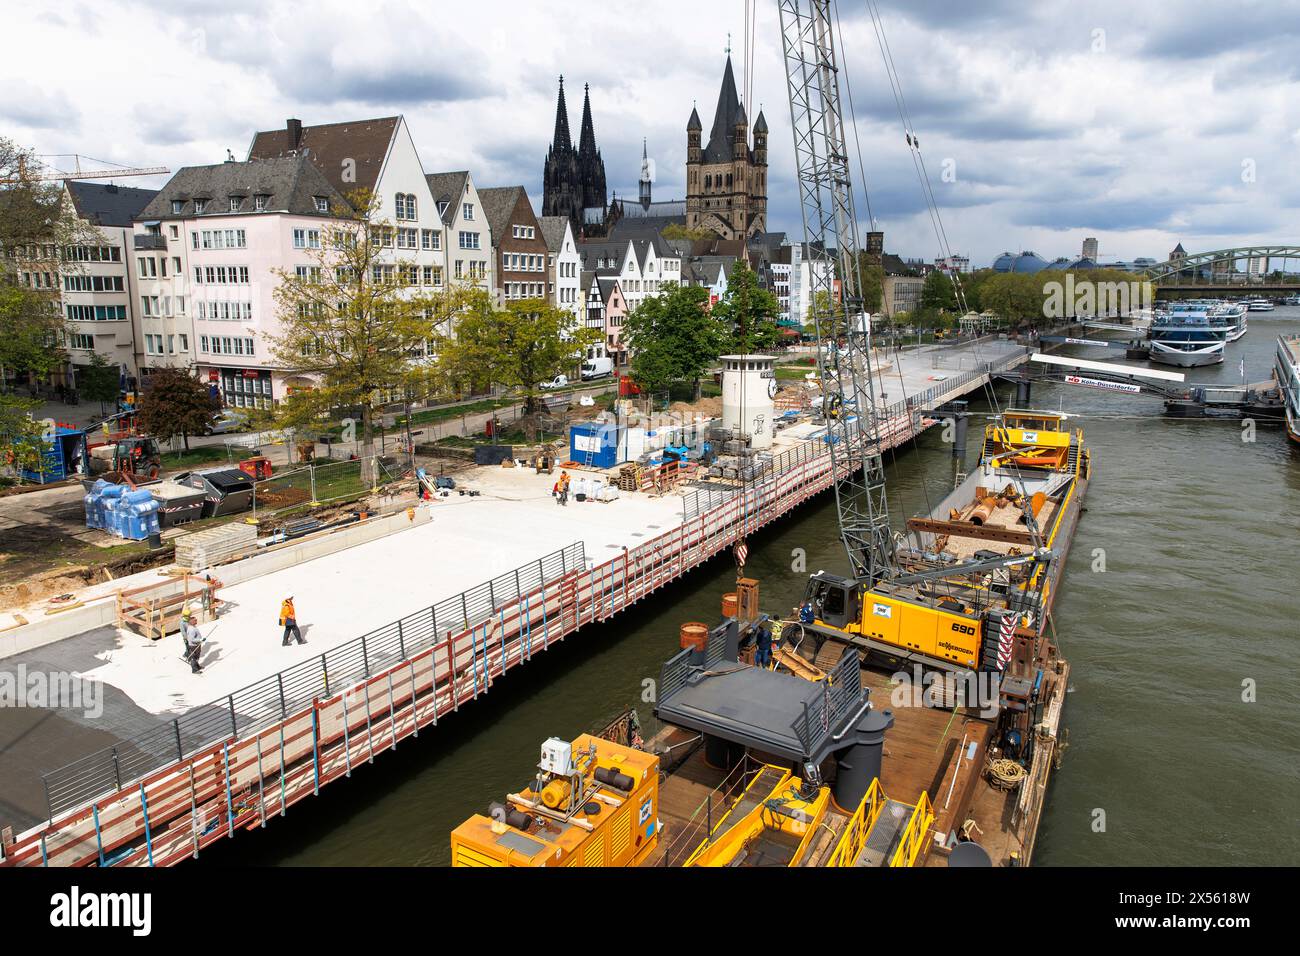 La promenade du Rhin en face de la vieille ville obtient une nouvelle dalle cantilever, chantier de construction, la cathédrale et l'église Gross St. Martin, Cologne, allemand Banque D'Images